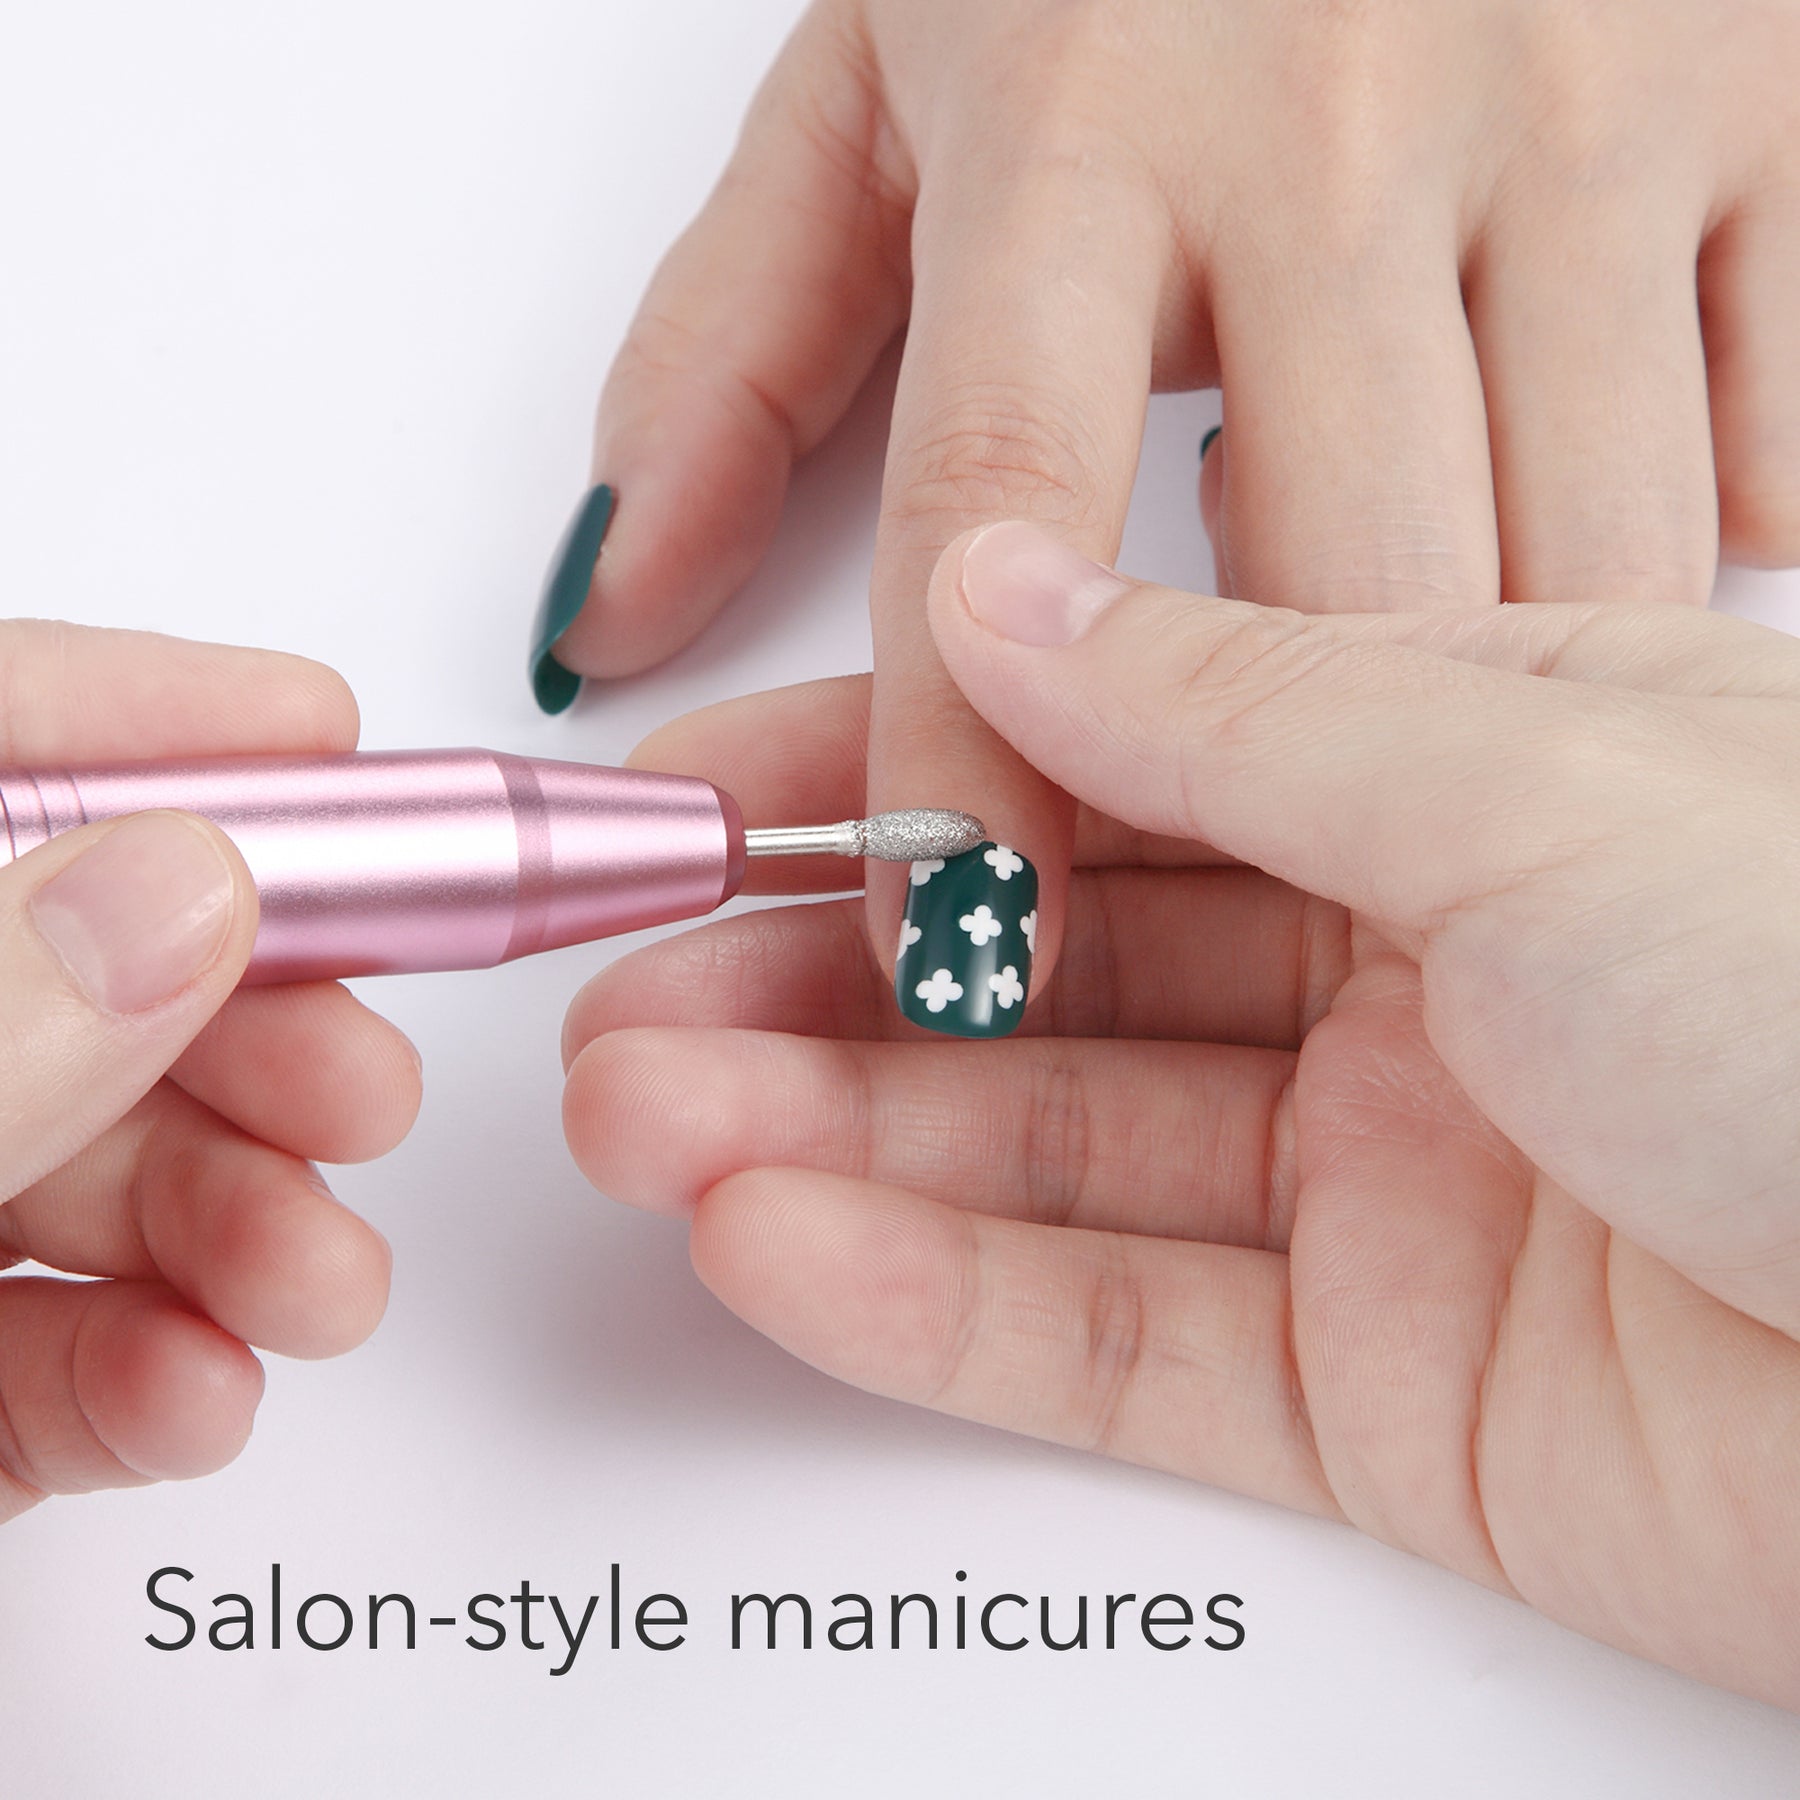 mazotcu1 | Gel nails, Diy acrylic nails, Acrylic nails at home